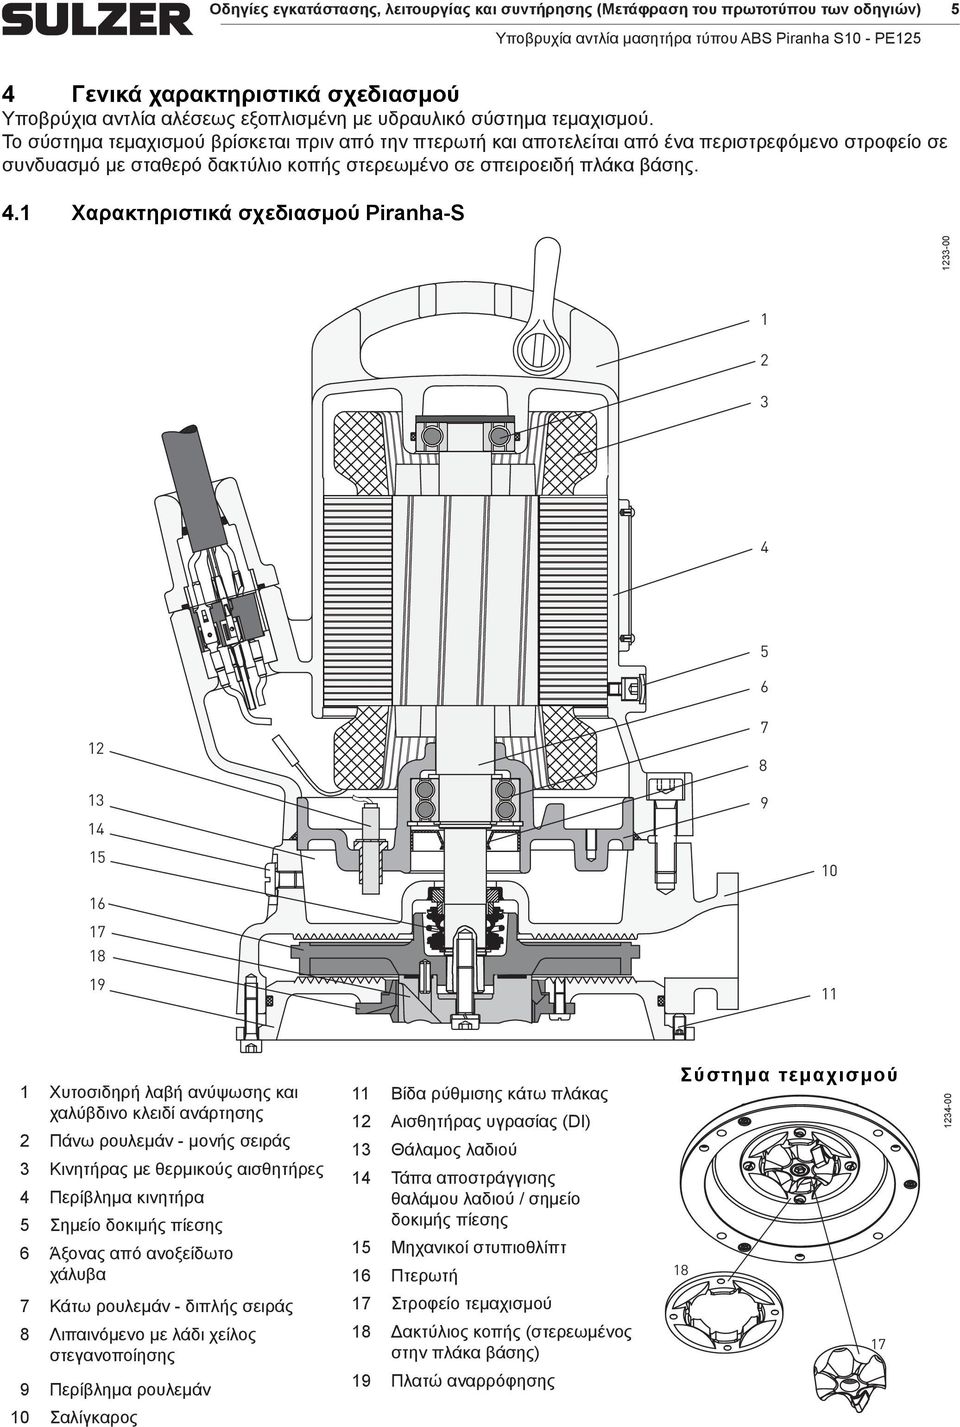 1 Χαρακτηριστικά σχεδιασμού Piranha-S 1233-00 1 2 3 4 5 6 12 13 14 15 16 17 18 19 7 8 9 10 11 1 Χυτοσιδηρή λαβή ανύψωσης και χαλύβδινο κλειδί ανάρτησης 2 Πάνω ρουλεμάν - μονής σειράς 3 Κινητήρας με